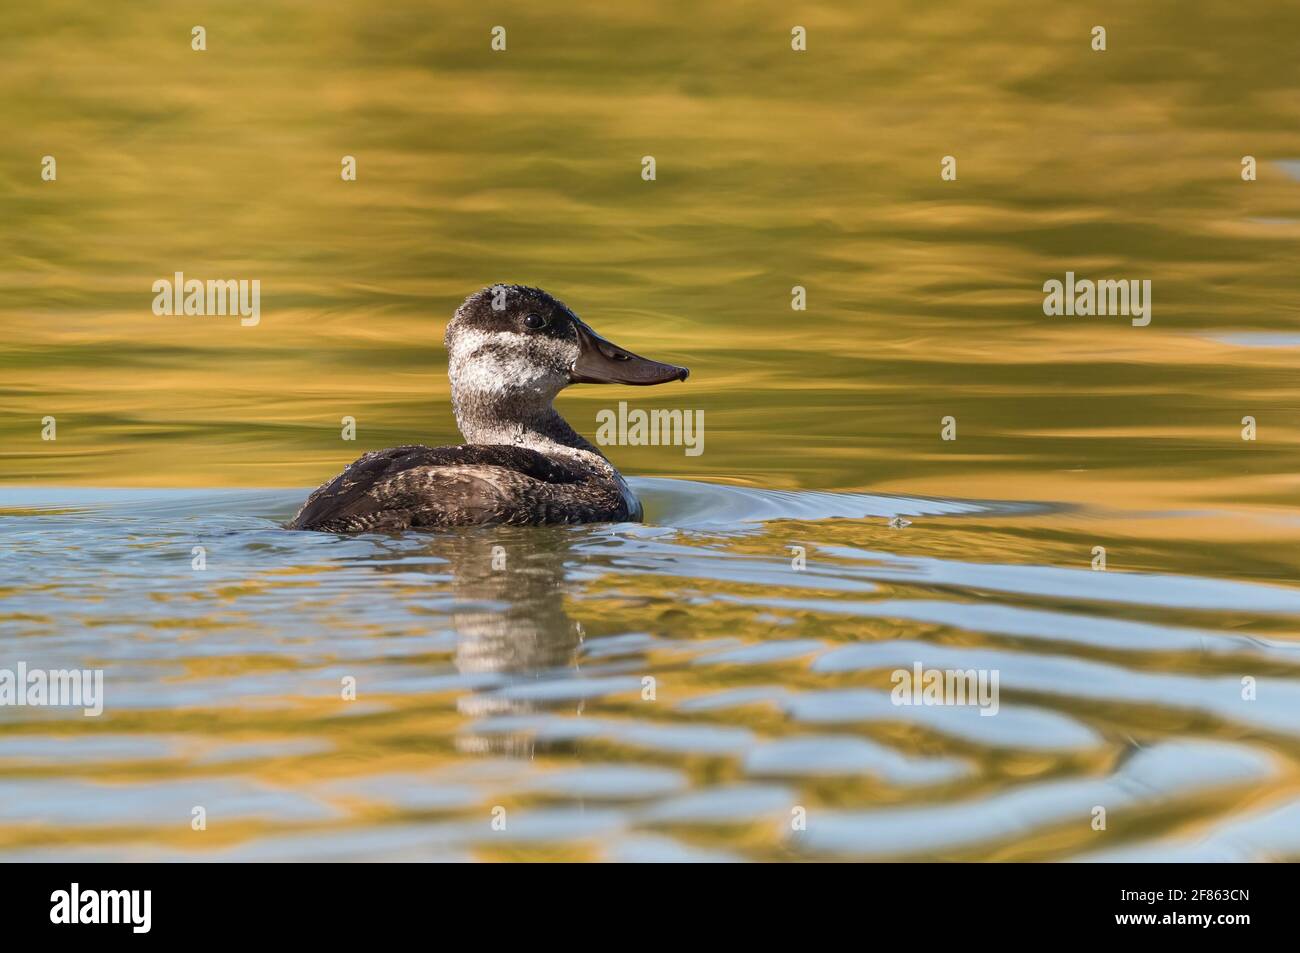 Une femelle Ruddy Duck nageant dans un lac doré reflétant la saison d'automne à proximité. Banque D'Images